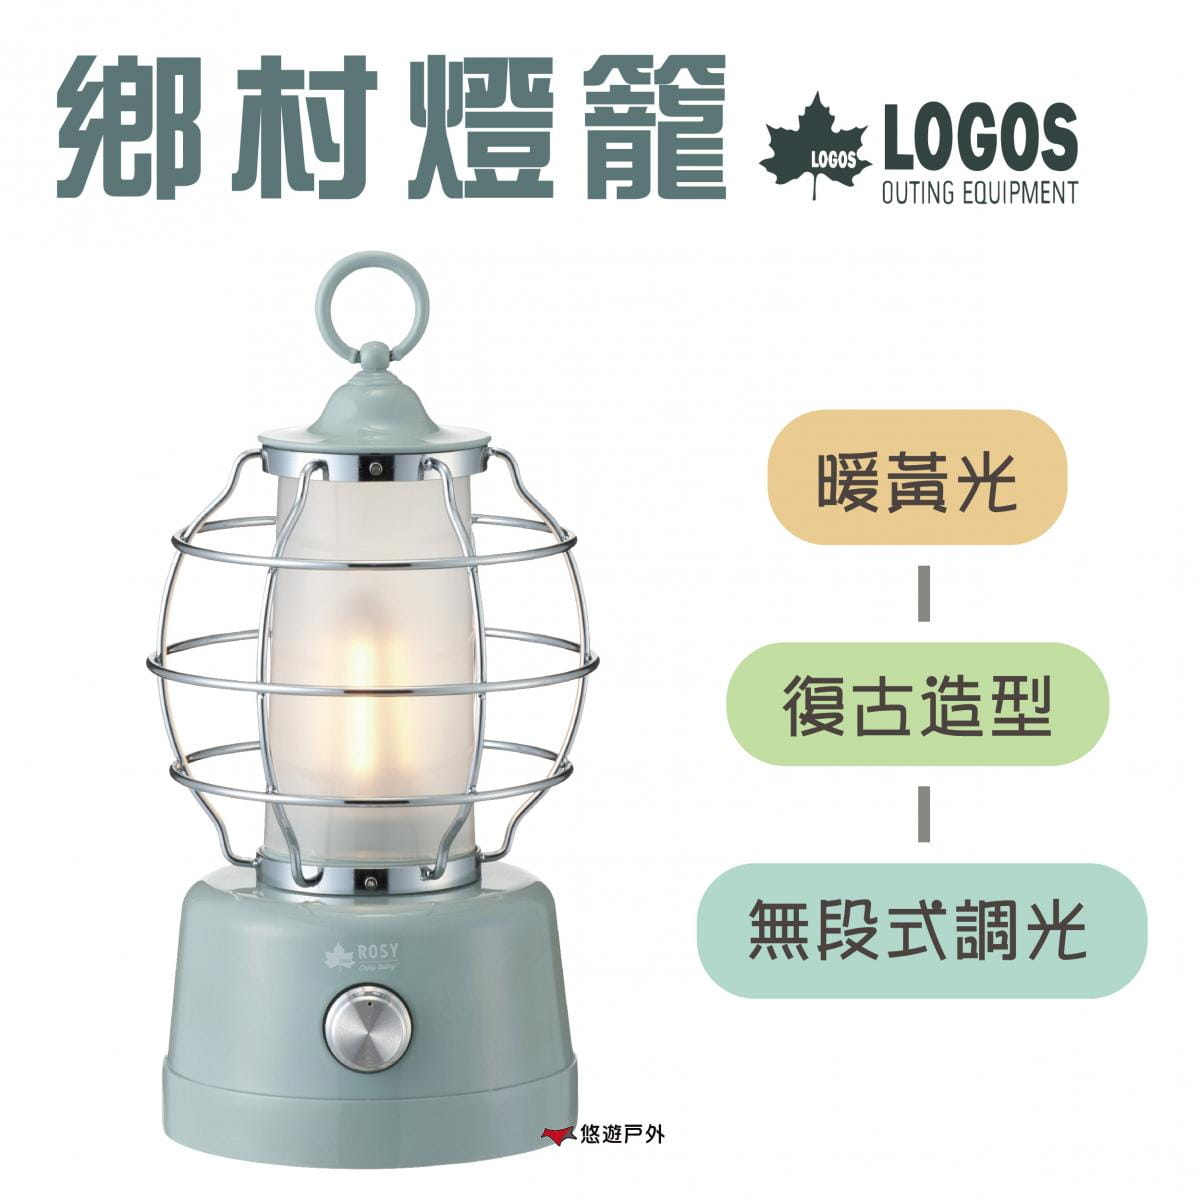 【日本LOGOS】ROSY LED鄉村燈籠_LG74175022 (悠遊戶外) 0